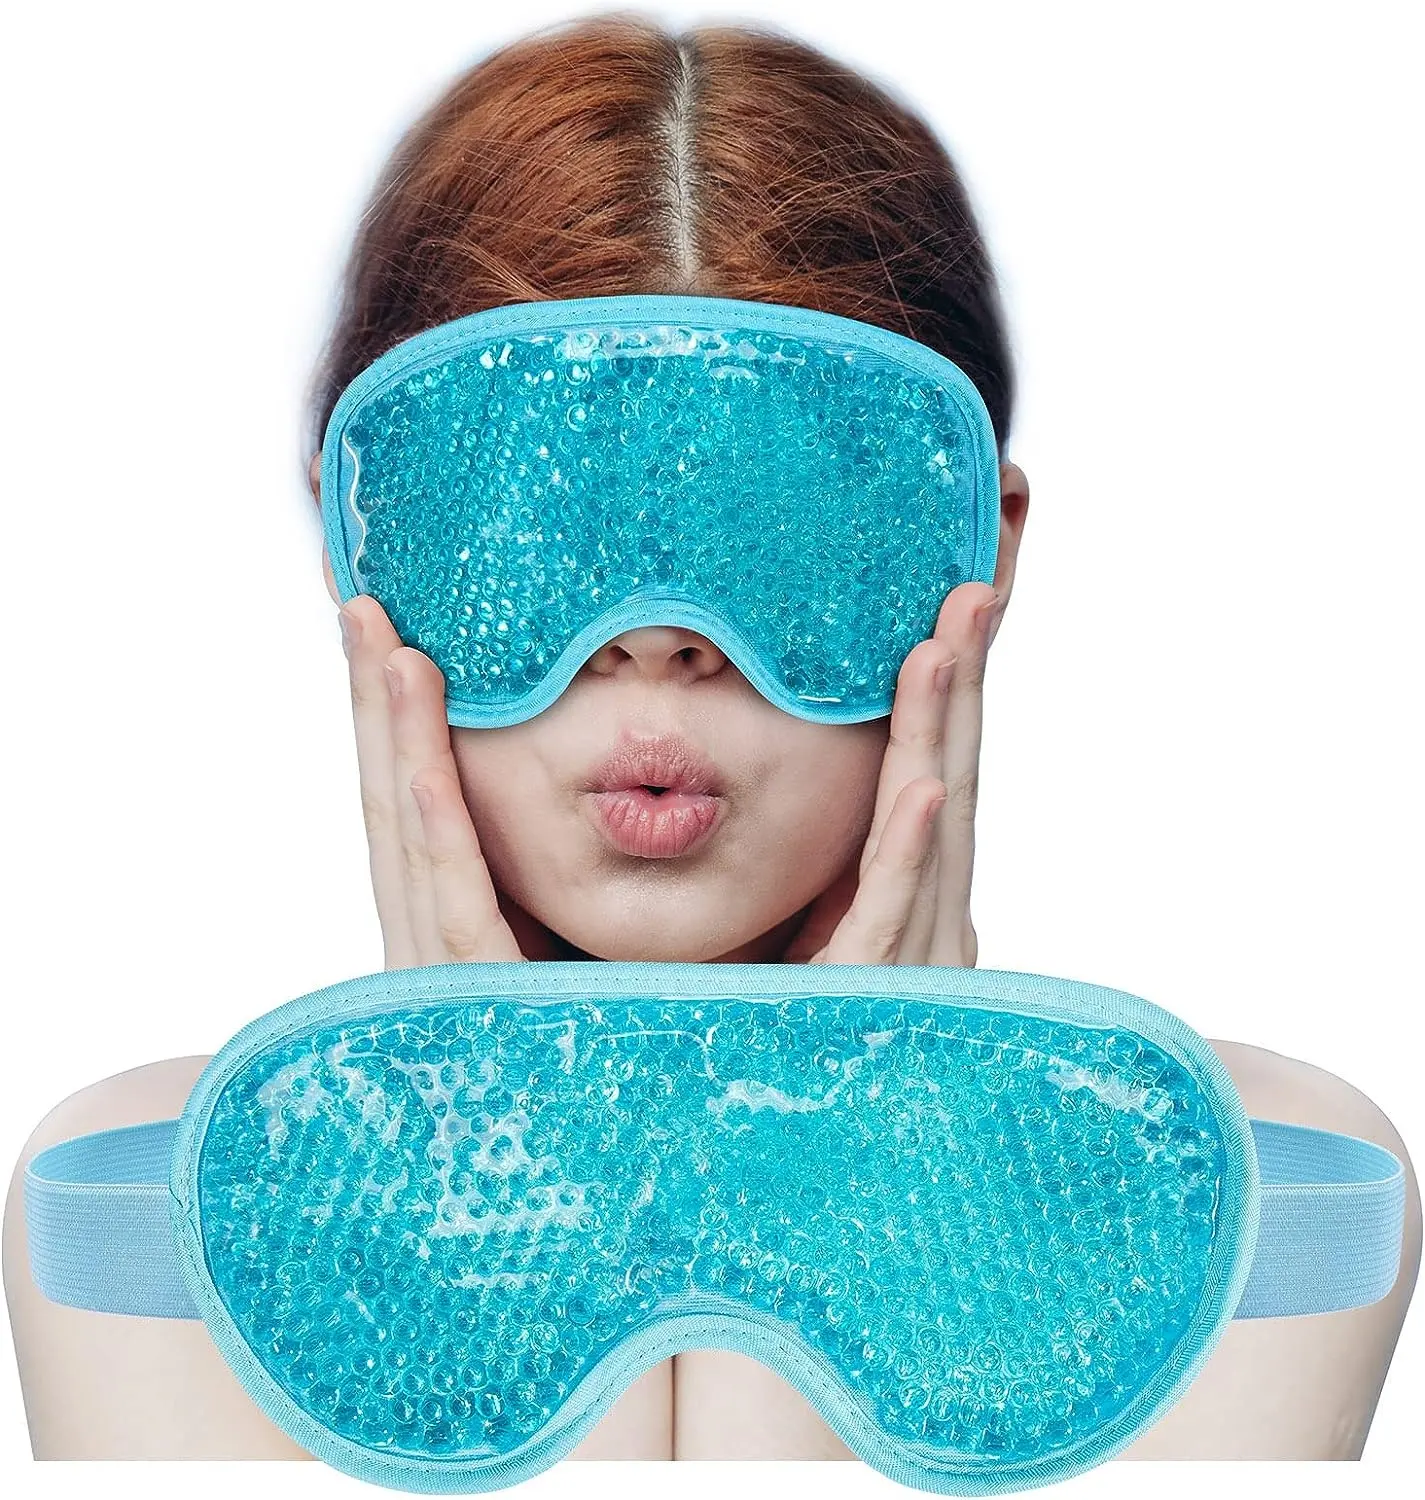 Venta caliente Máscara de enfriamiento para los ojos con cuentas de gel Compresa fría reutilizable Paquete de hielo Almohadillas de enfriamiento para los ojos para dormir